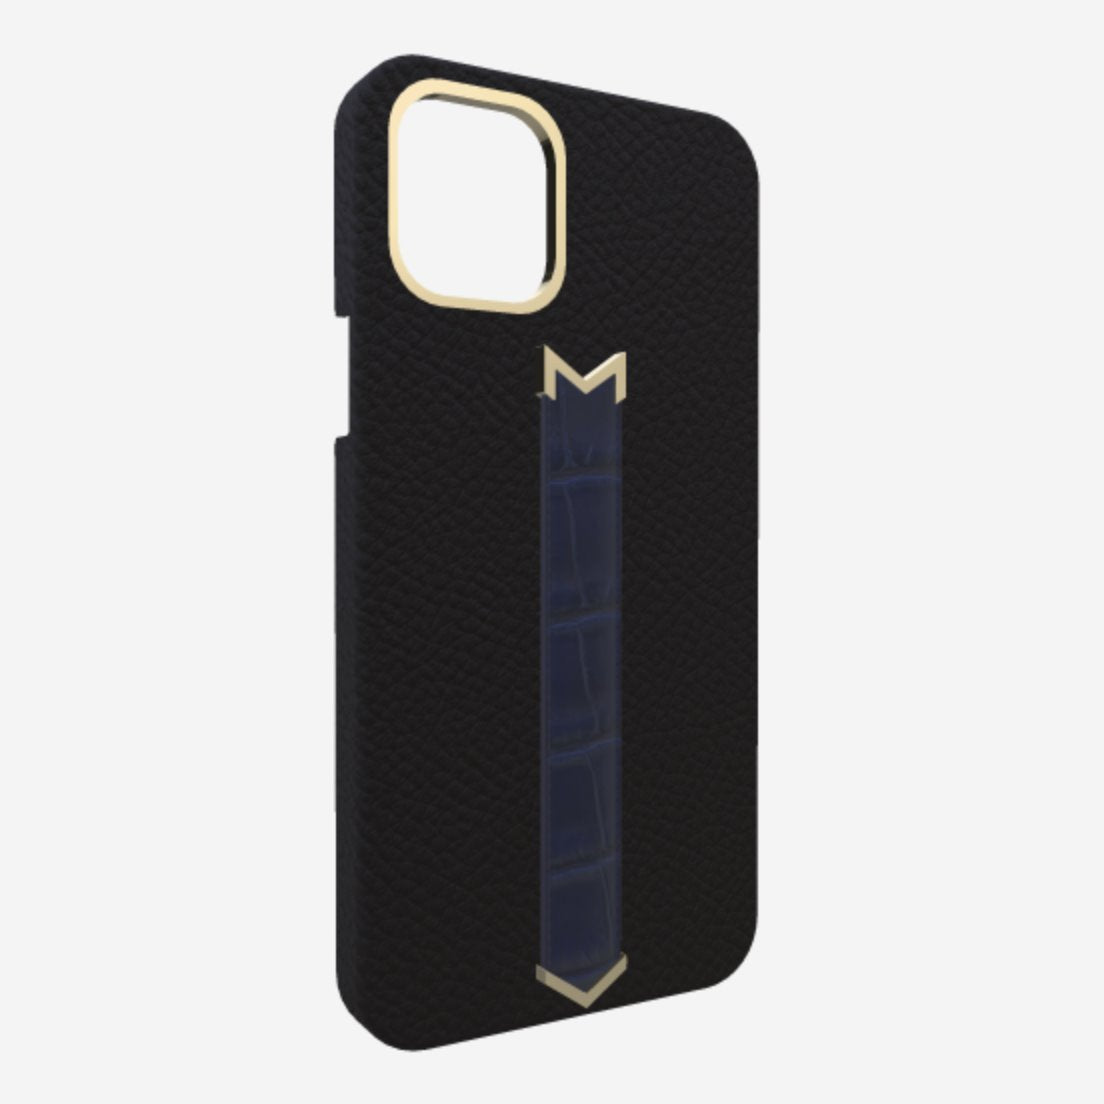 Gold Finger Strap Case for iPhone 13 Pro in Genuine Calfskin and Alligator Bond Black Navy Blue 